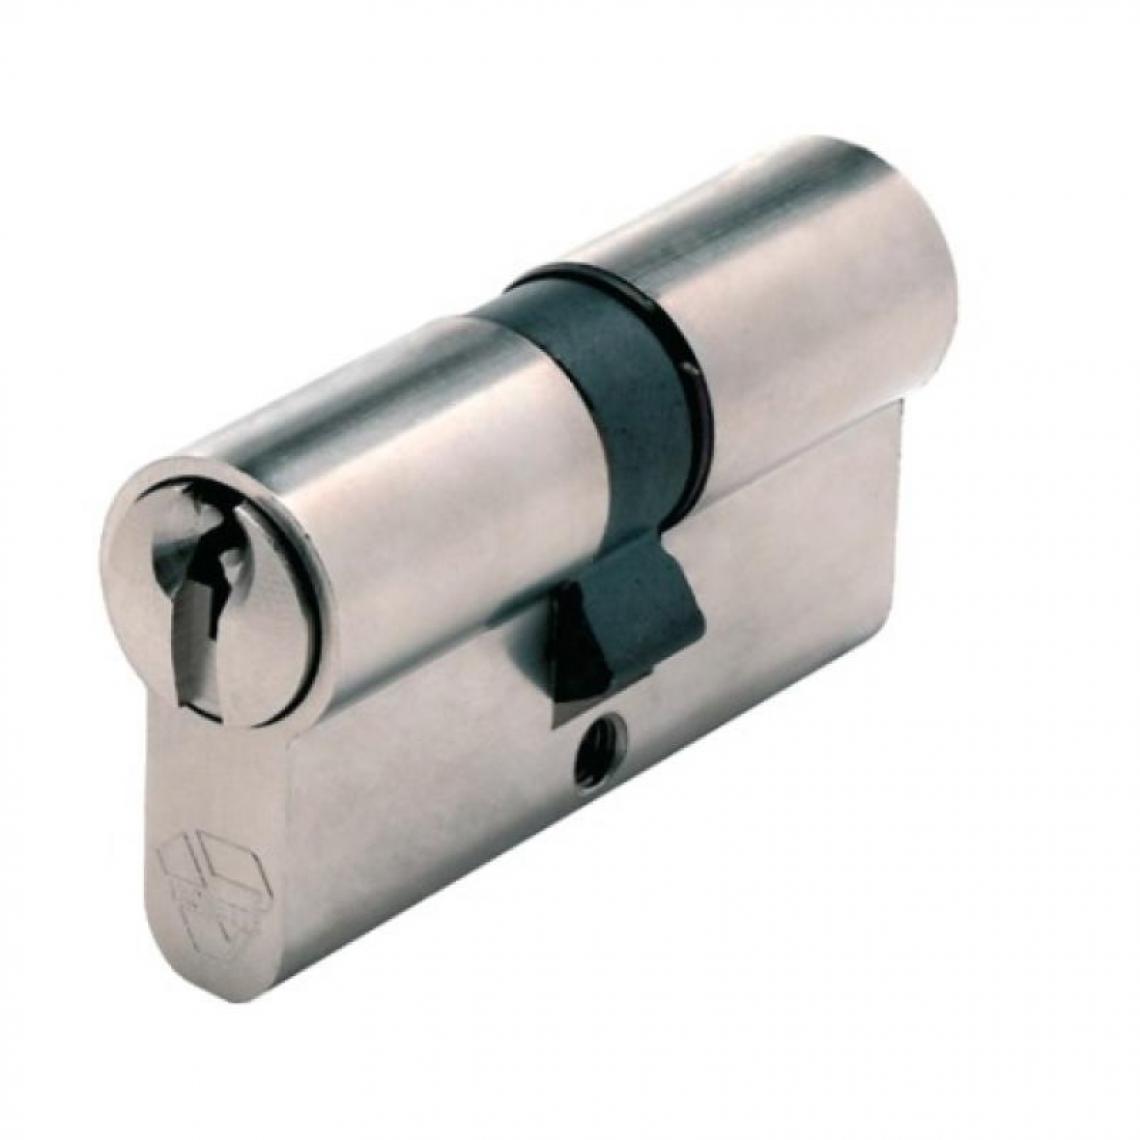 Vachette - Cylindre double breveté type Néo à clé protégée fonction clé de secours varié 3 clés 40 x 50 - Serrure